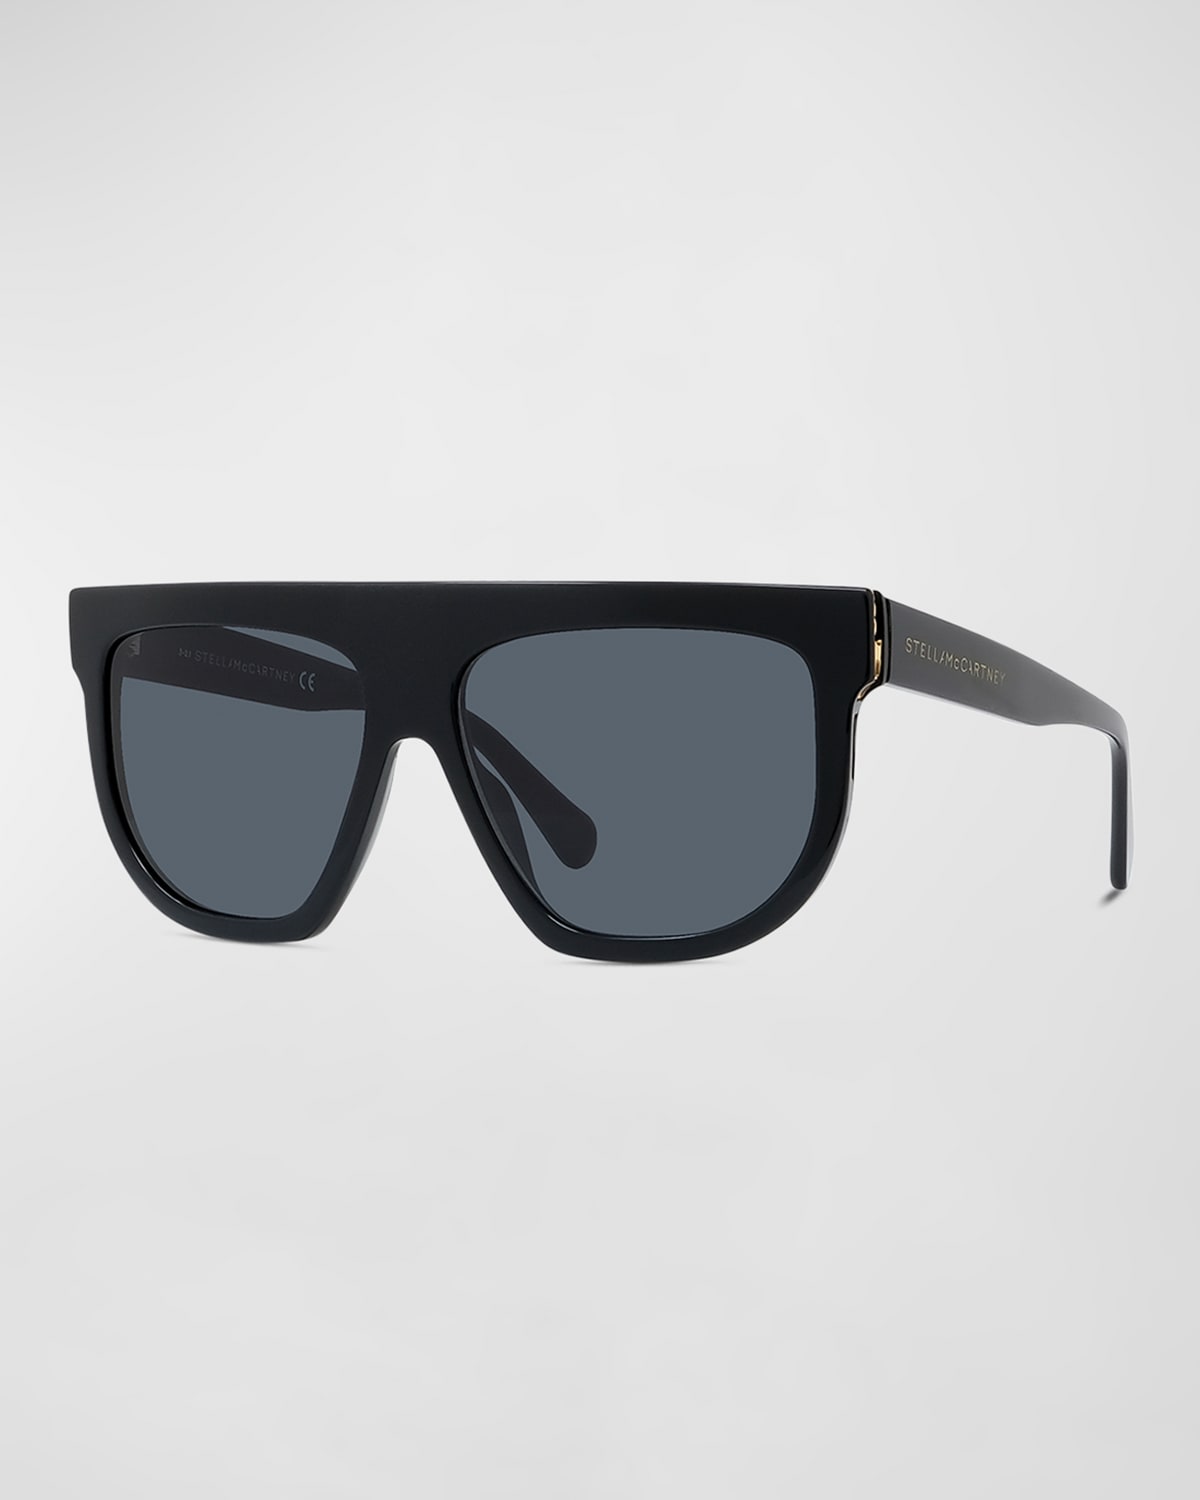 Stella Mccartney Bio-acetate Aviator Sunglasses W/ Chain Strap In Black/gray